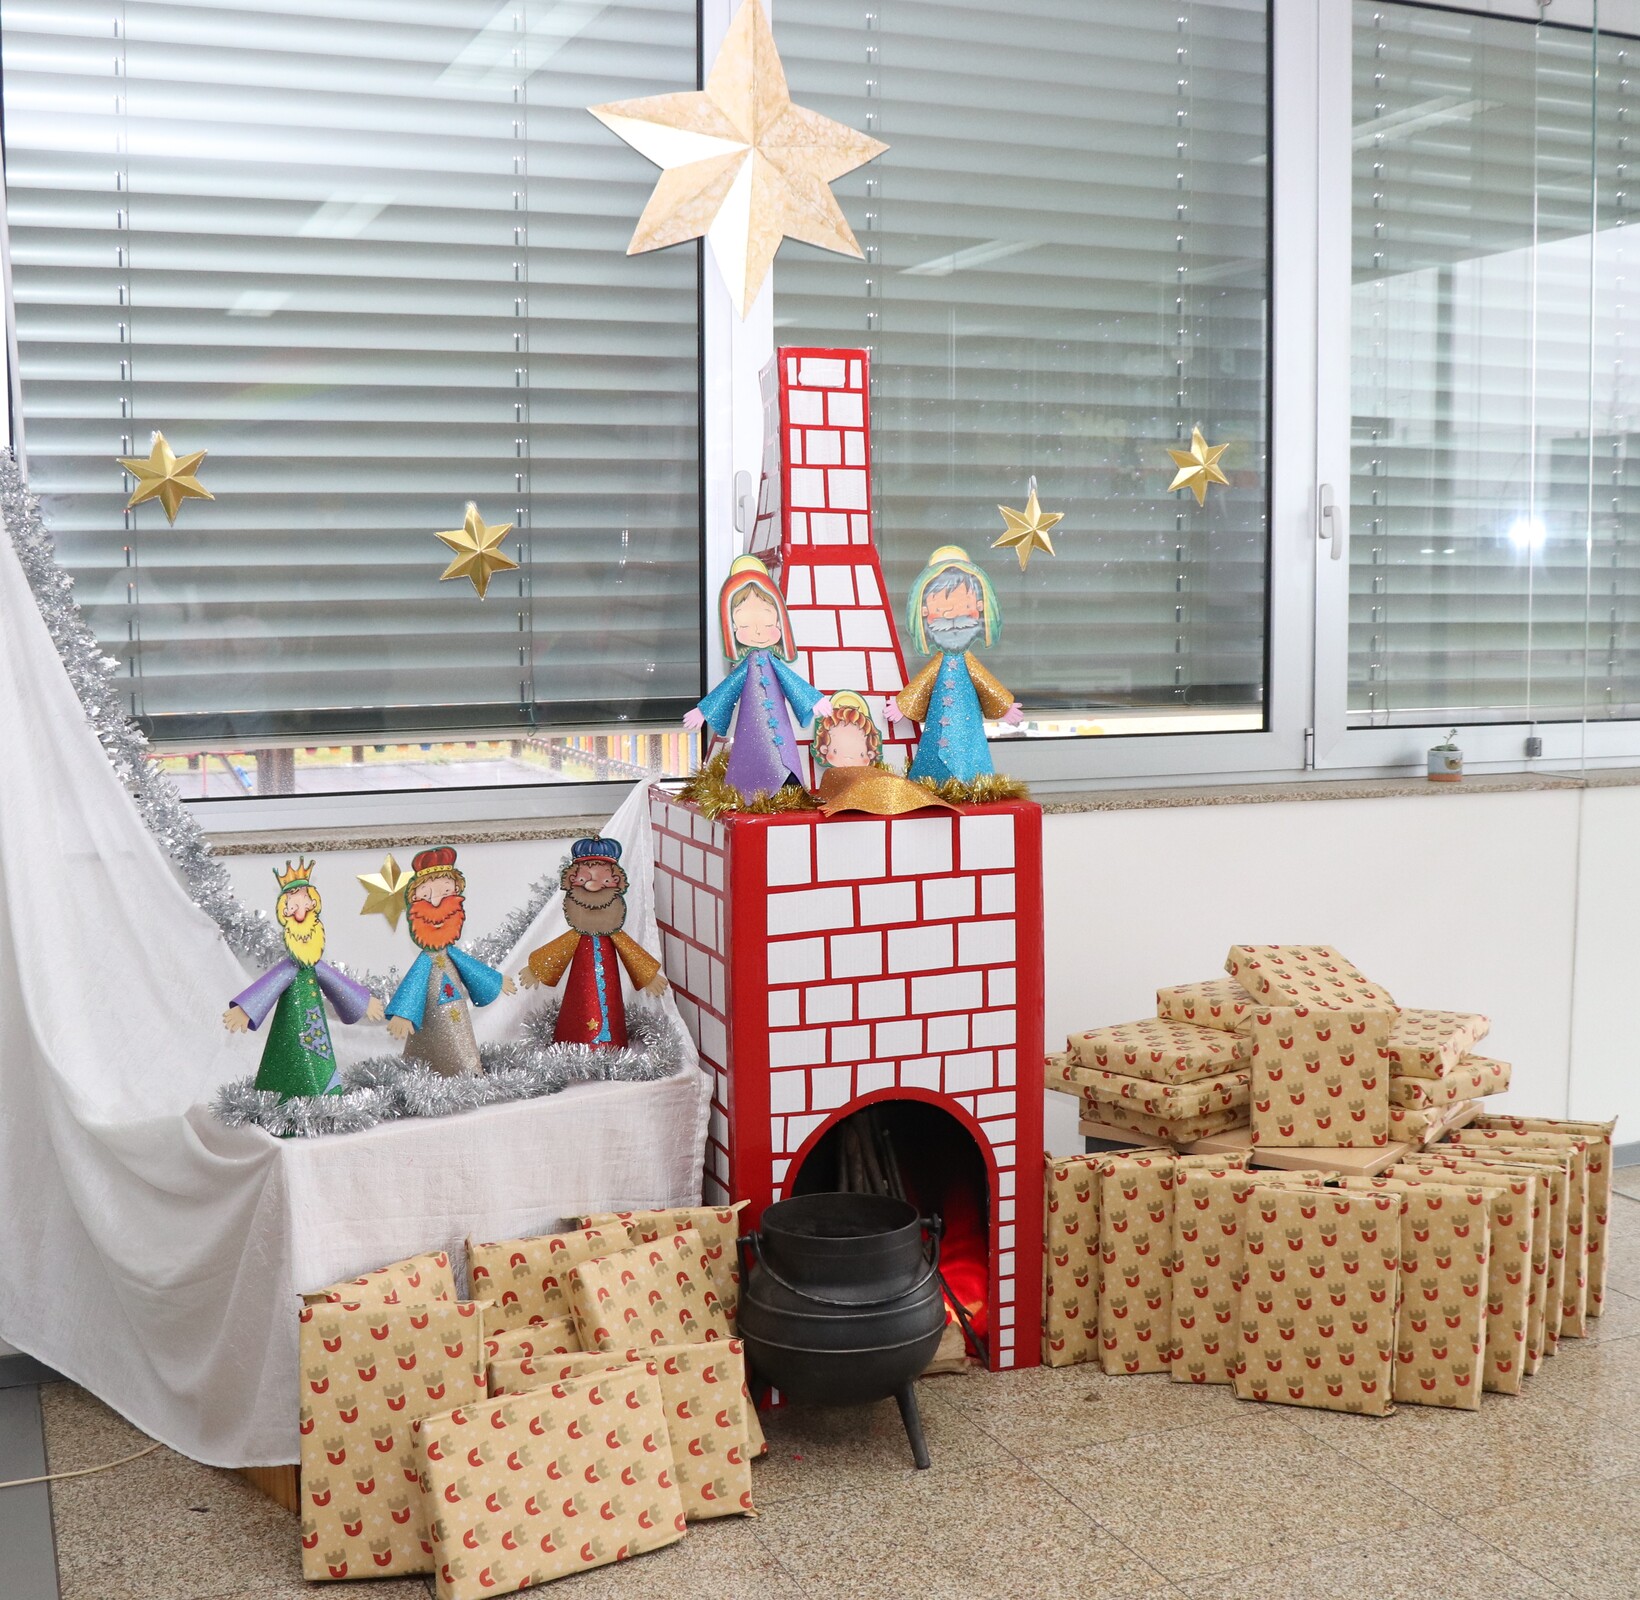 Município de Bragança leva o Natal a todas as crianças do concelho